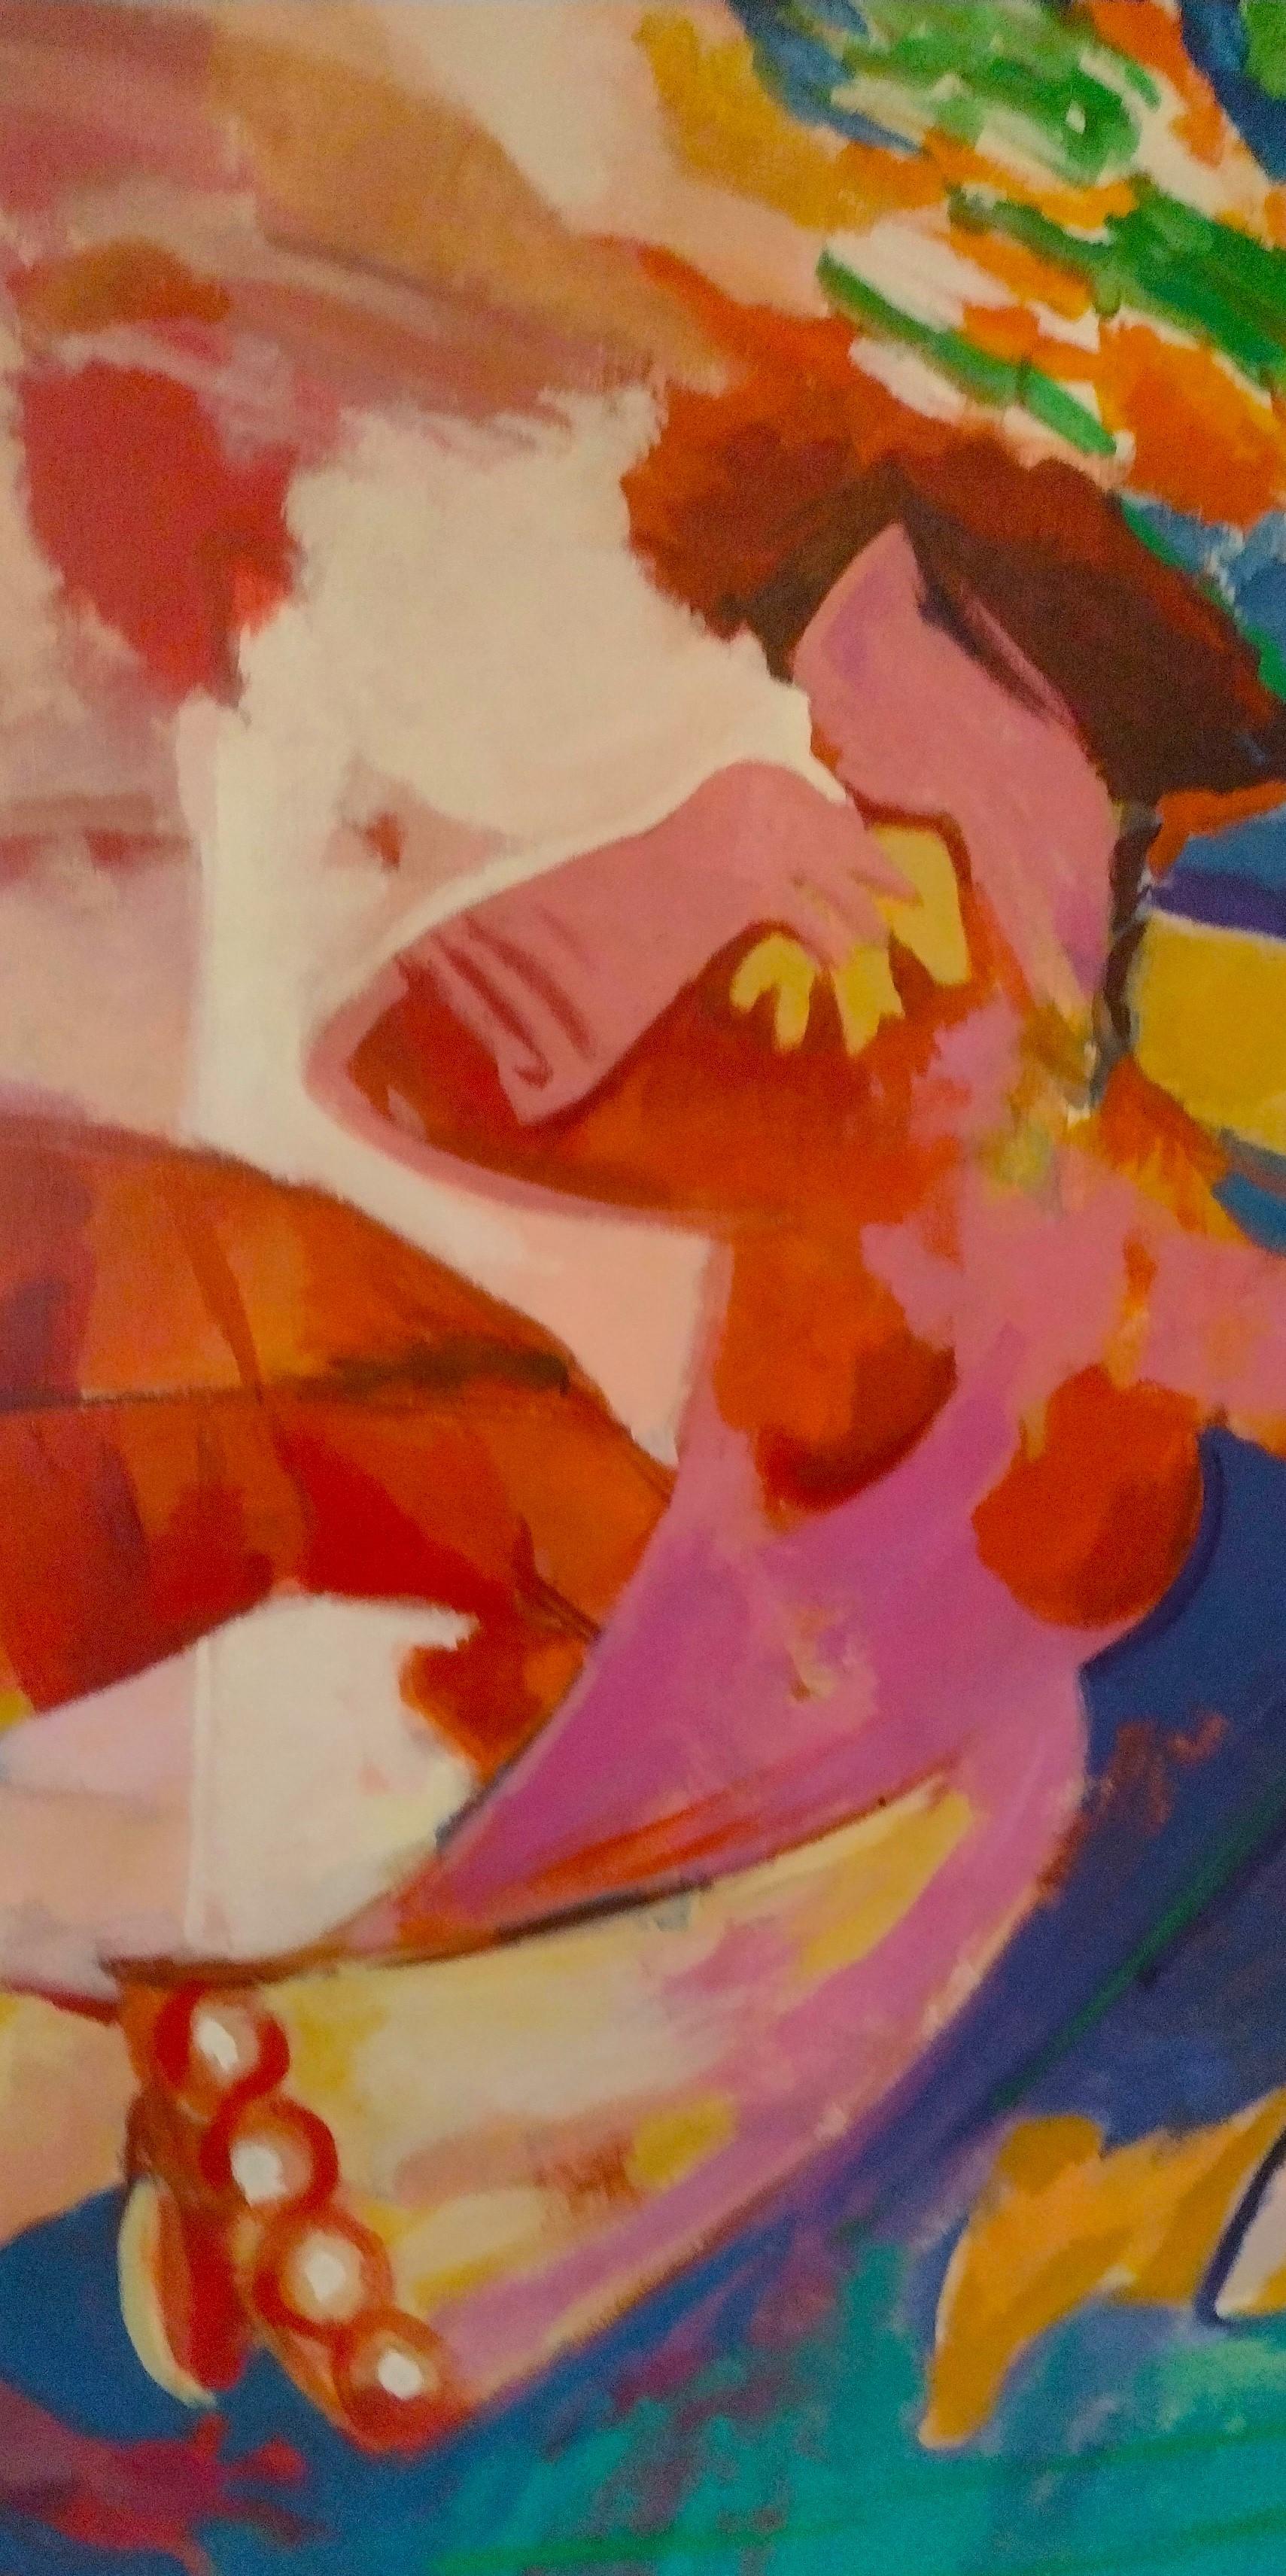 Hessam Abrishami ist ein Meister der leuchtenden Farben, der dynamischen Komposition und des kraftvollen Ausdrucks. Durch die künstlerische Förderung eines Gymnasiallehrers entdeckte Hessam sowohl seine Liebe zur Kunst als auch sein eigenes Talent.